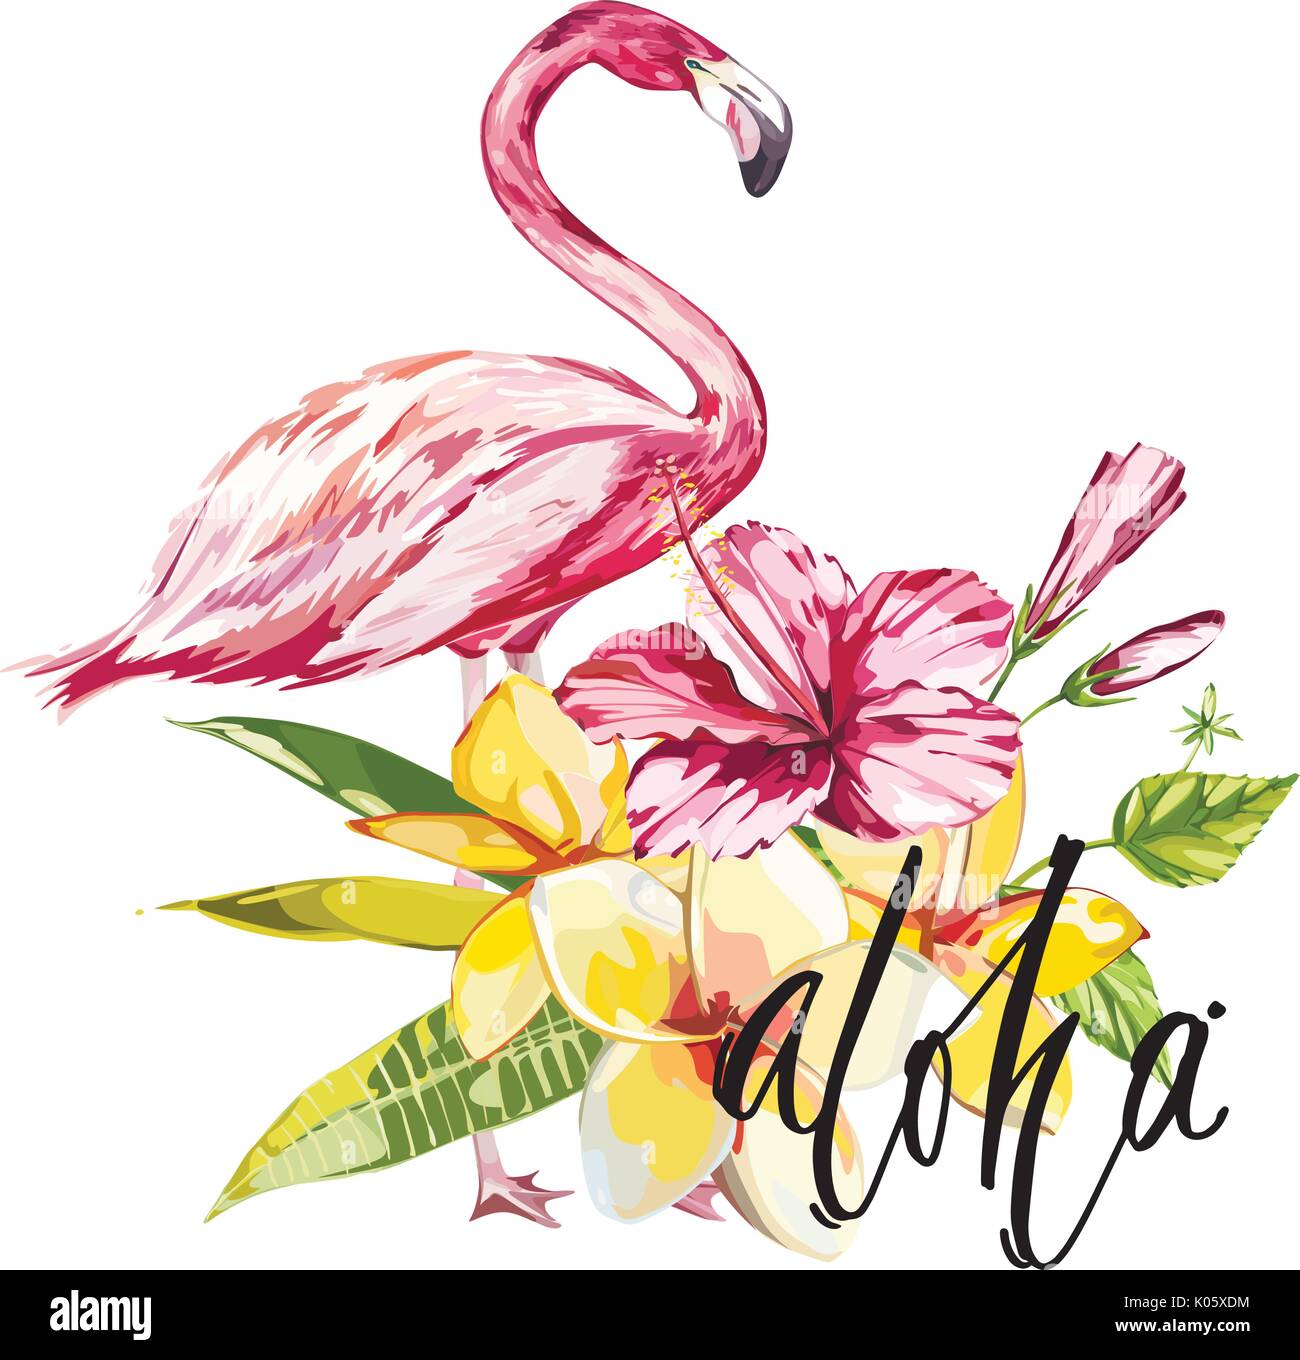 Wort - Aloha. Flamingo mit tropischen Blumen. Element für die Gestaltung von Einladungen, Filmplakate, Stoffen und anderen Objekten. Auf weiß isoliert. Vector EPS 10. Stock Vektor